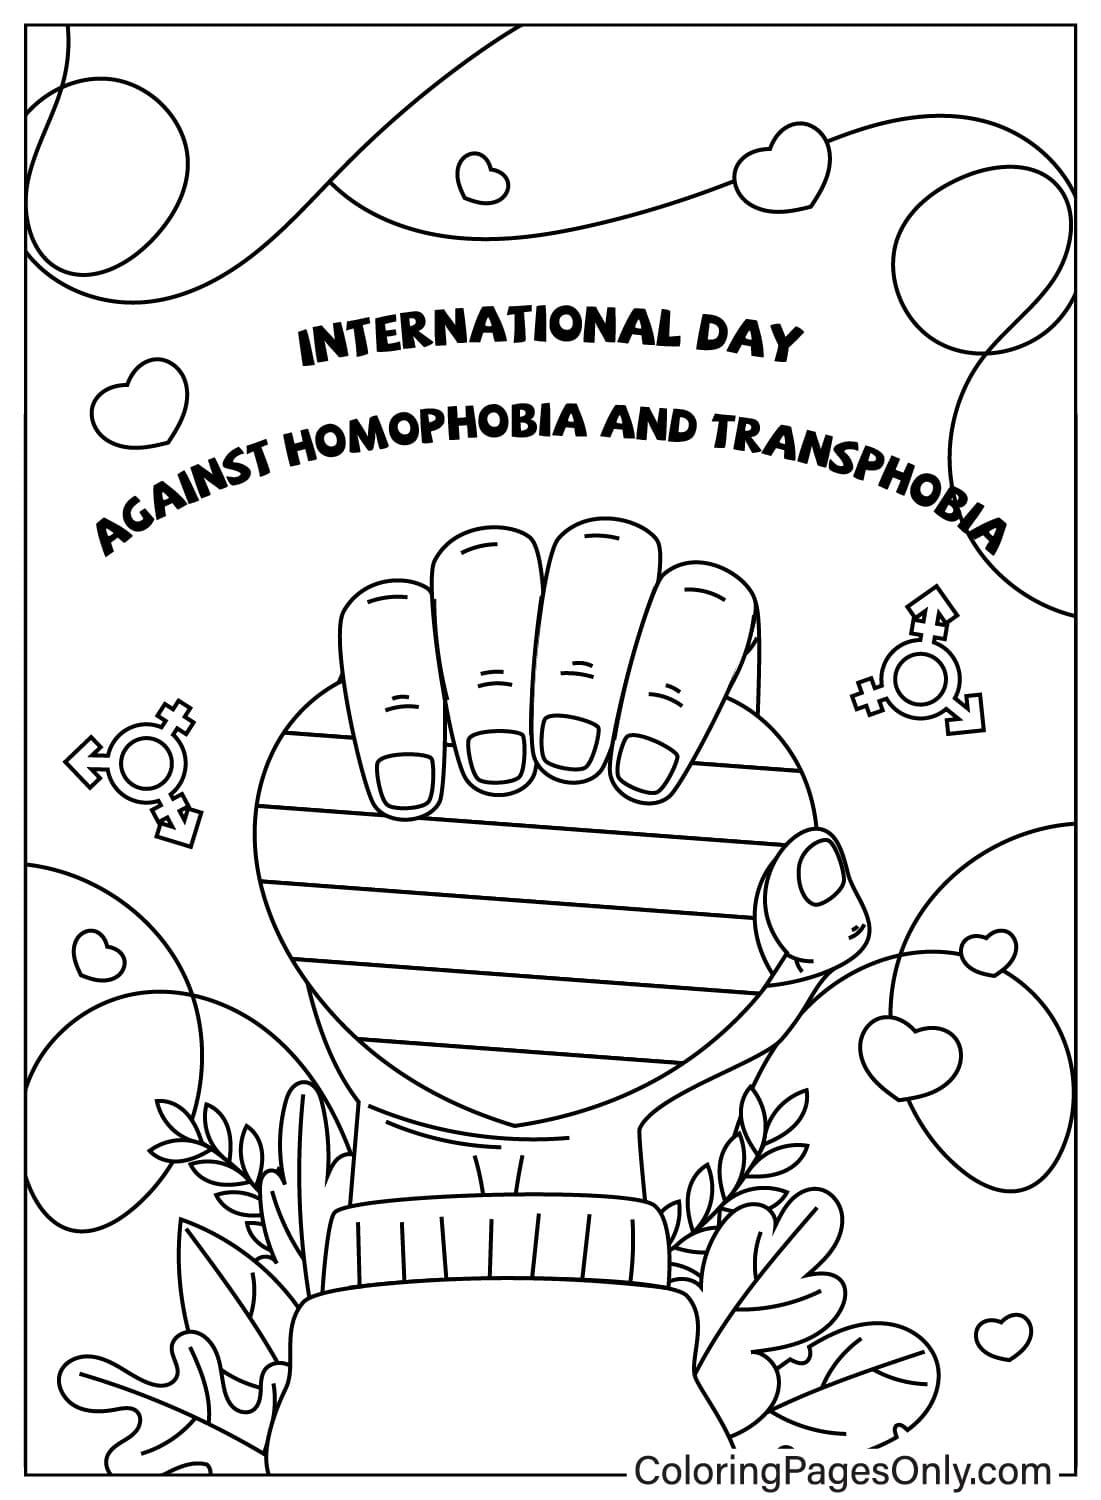 Malvorlagen zum Internationalen Tag gegen Homophobie und Transphobie im Mai vom Mai